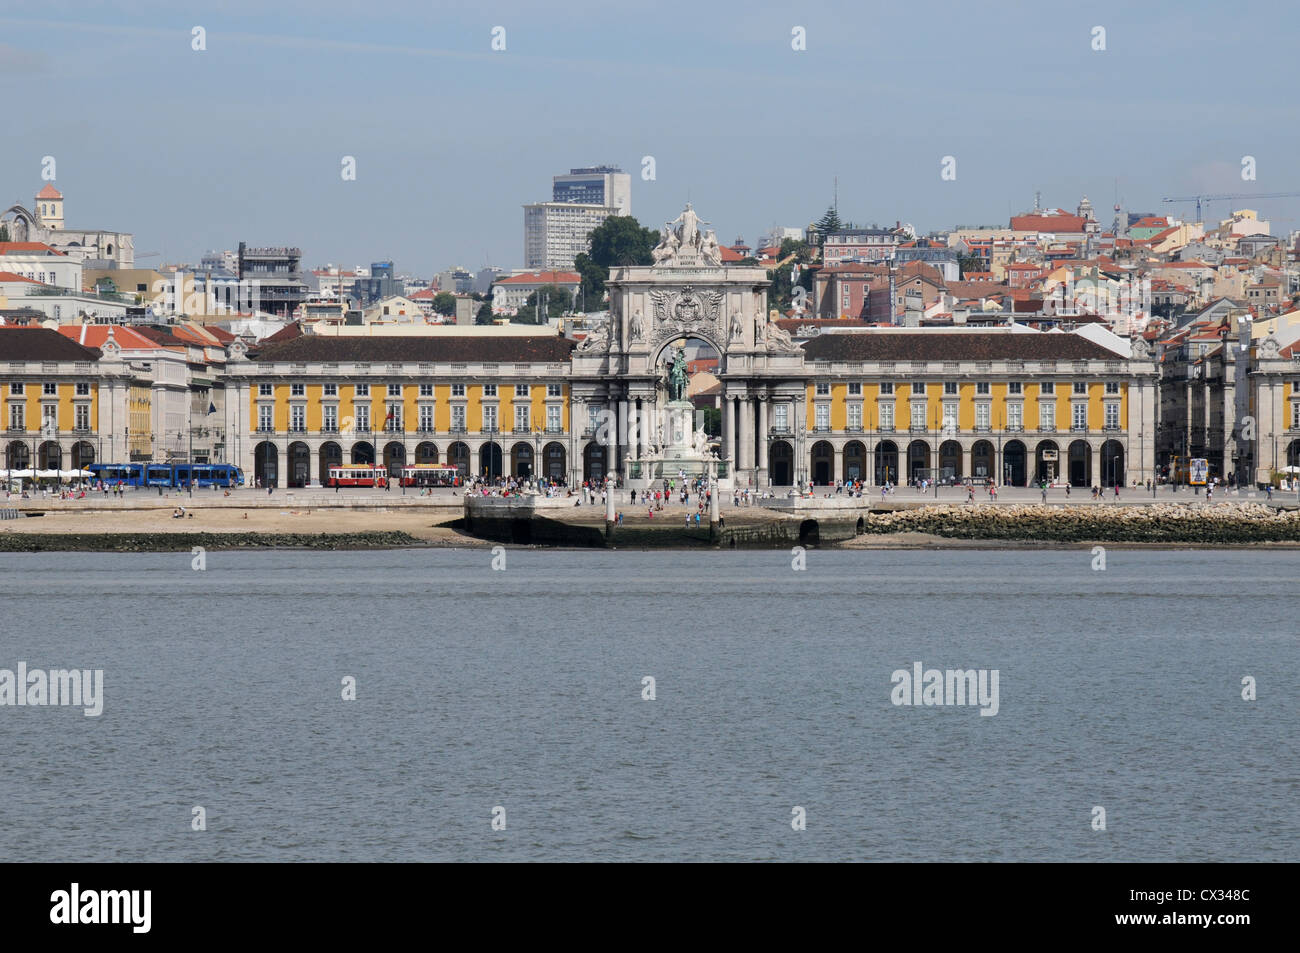 Praca do Comercio (Trade Square), Lisbon as seen from the River Tagus Stock Photo